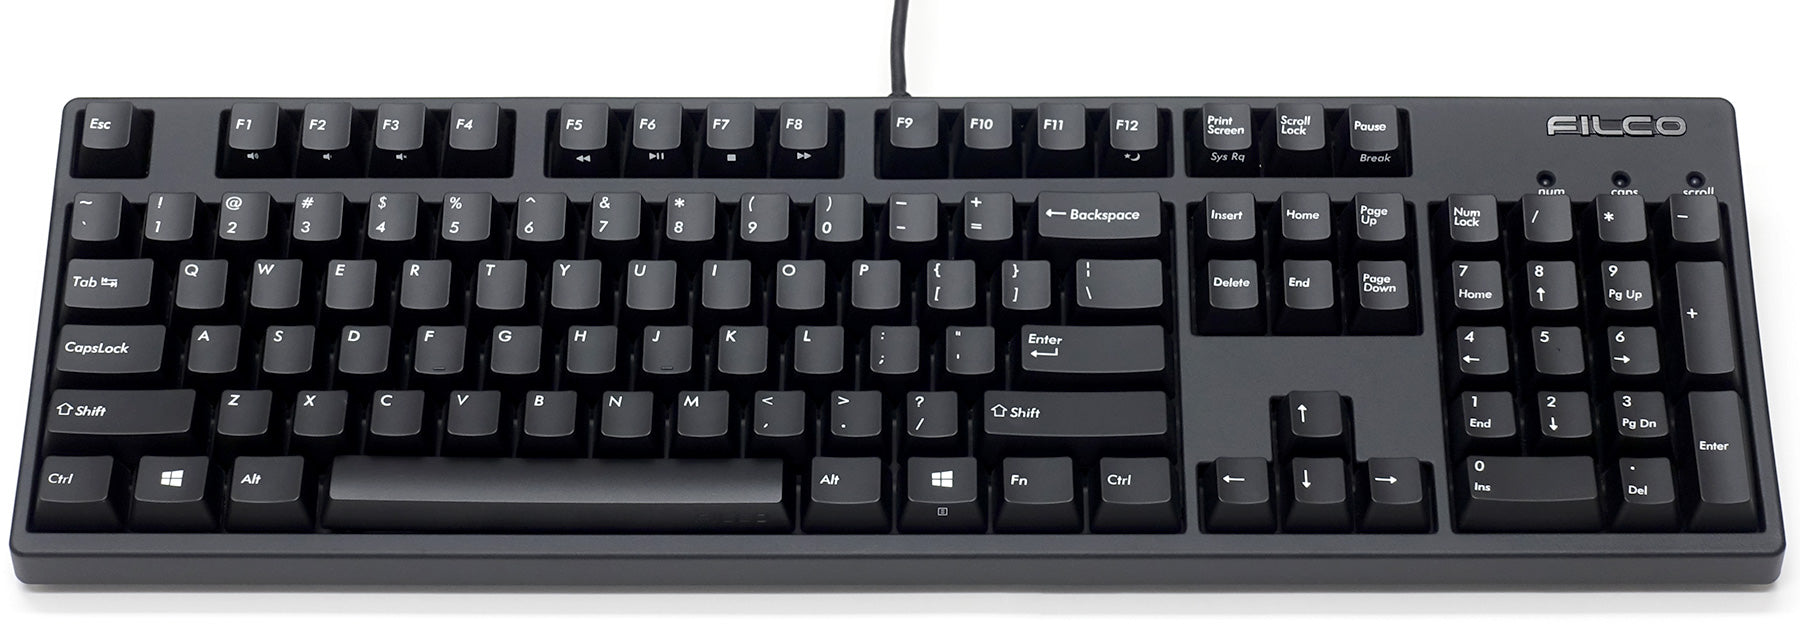 Filco Majestouch 3 Mechanical Keyboard